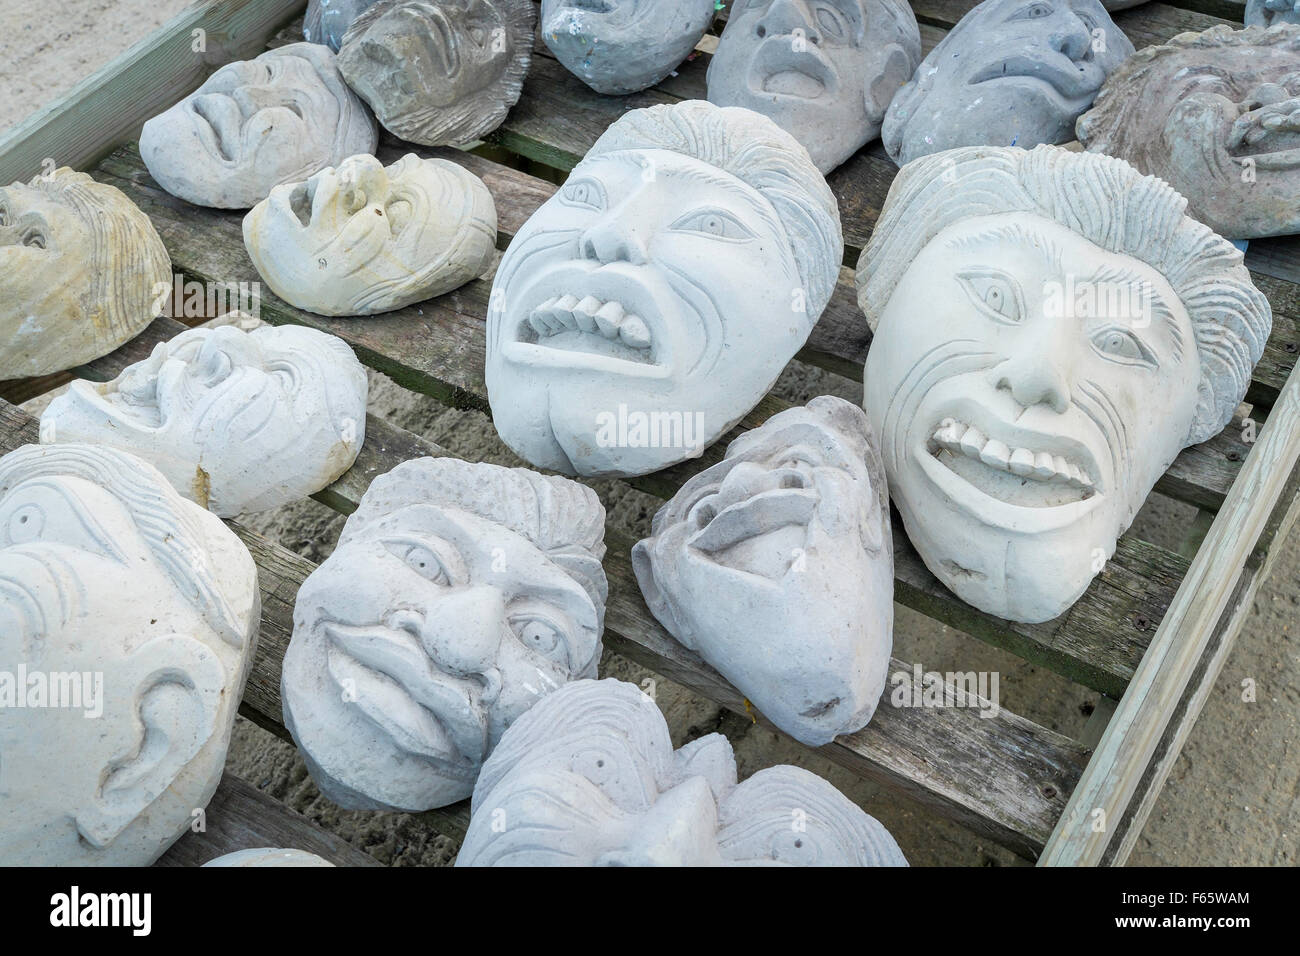 Garden ornament grotesque cast stone heads for sale in a garden centre Stock Photo